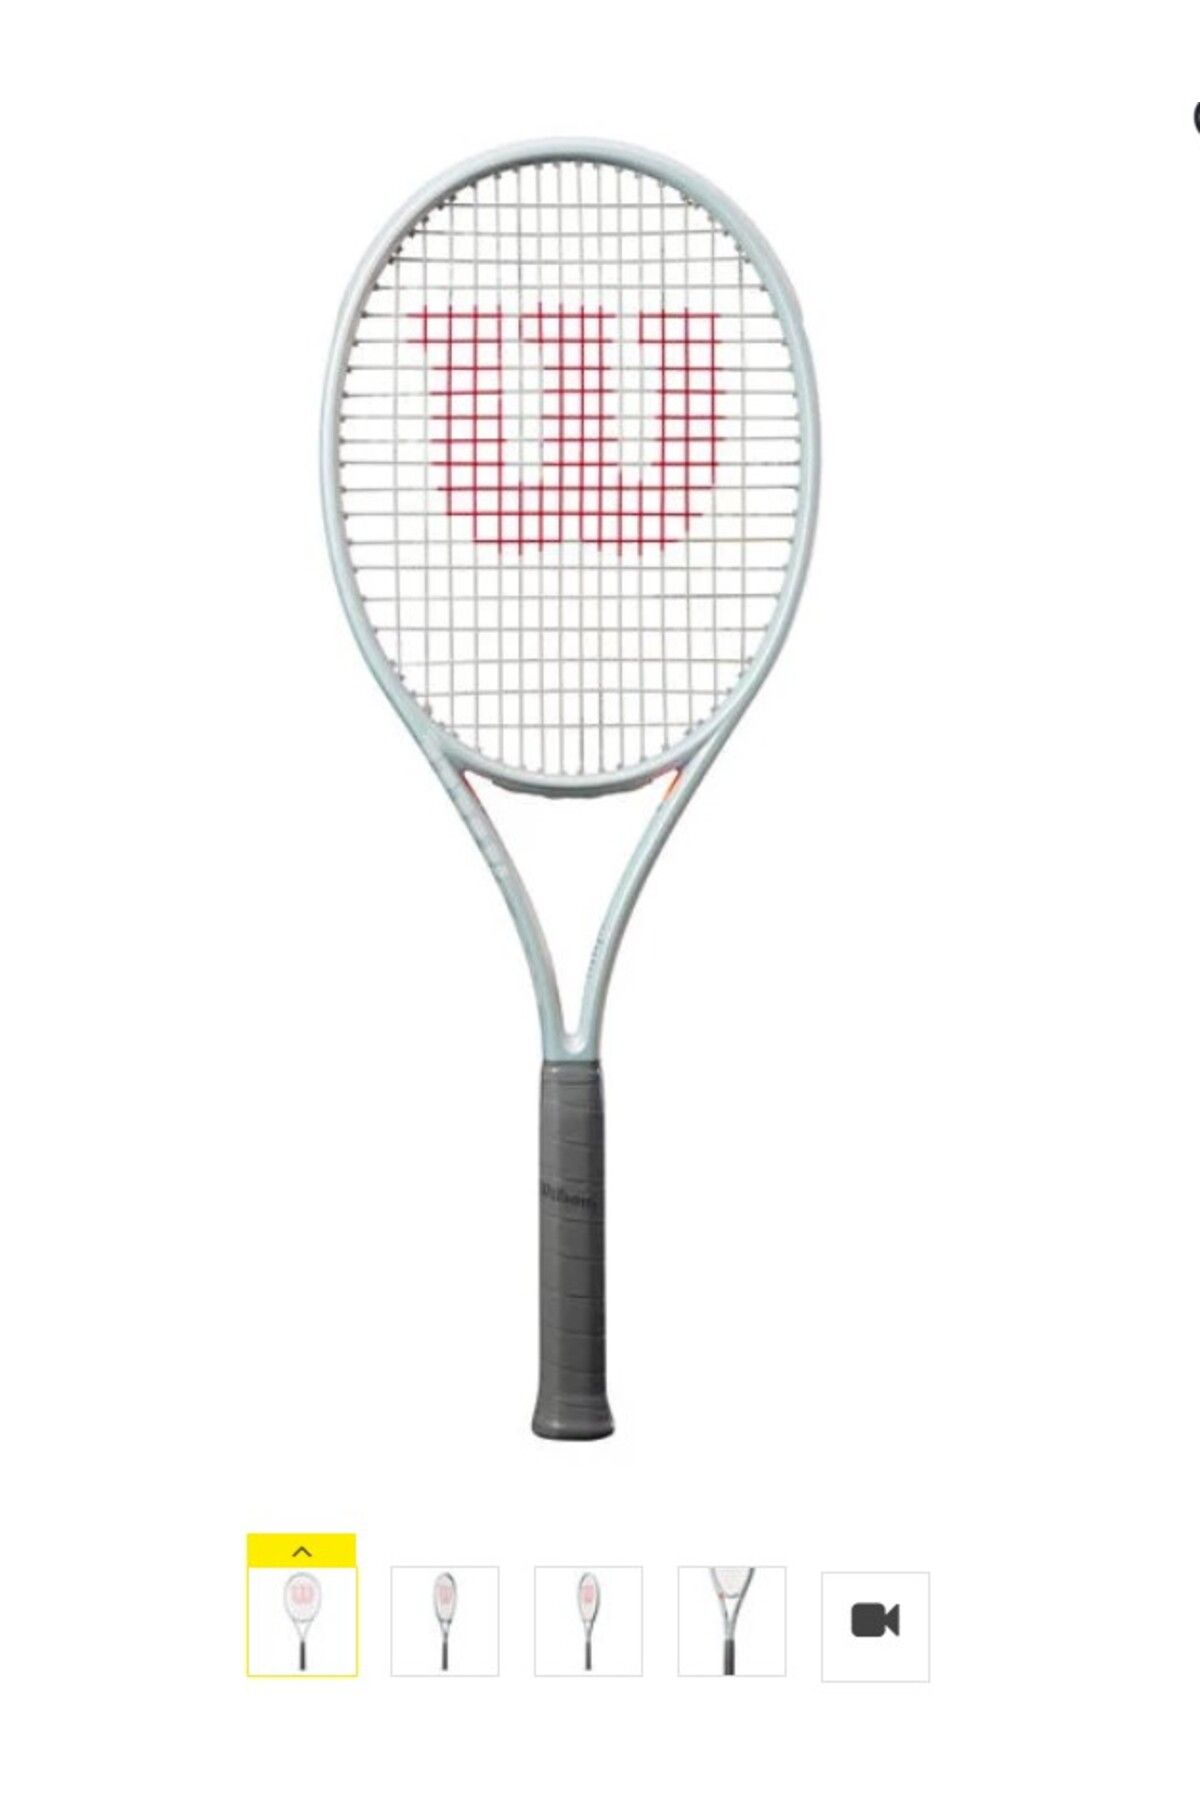 Wilson Shift 99l V1 Tenis Raketi-285 gr Kordajsız